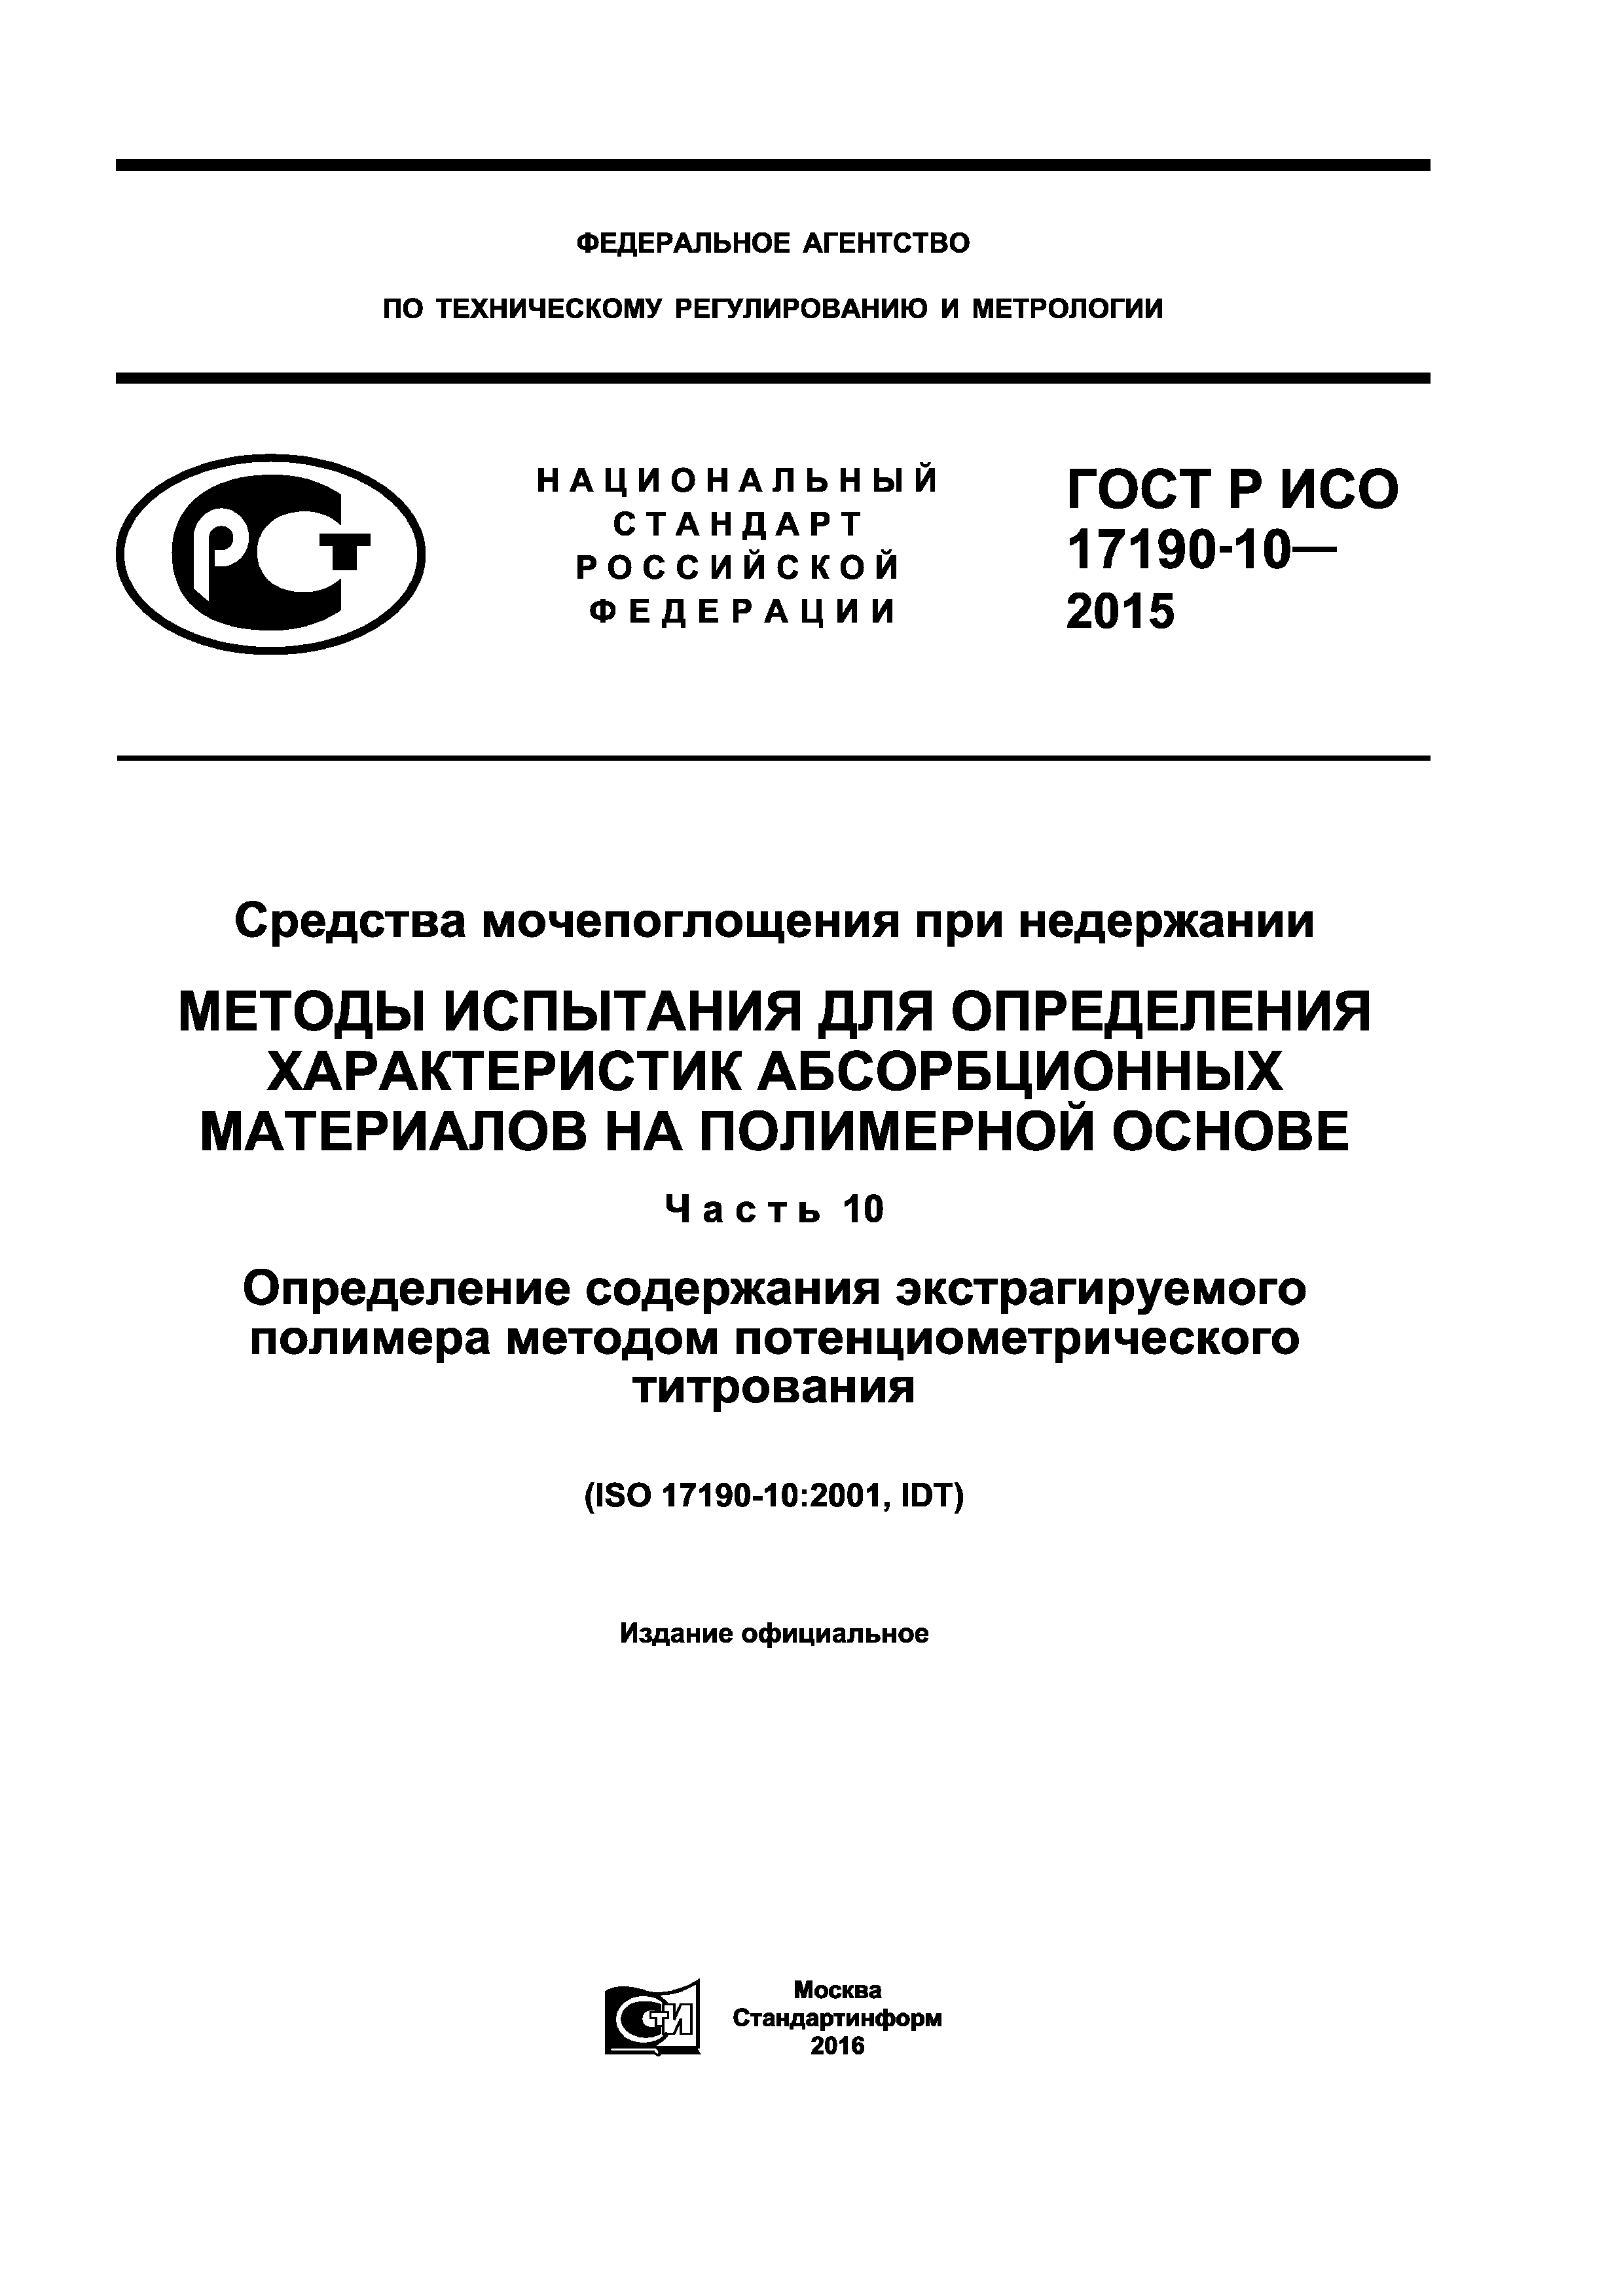 ГОСТ Р ИСО 17190-10-2015